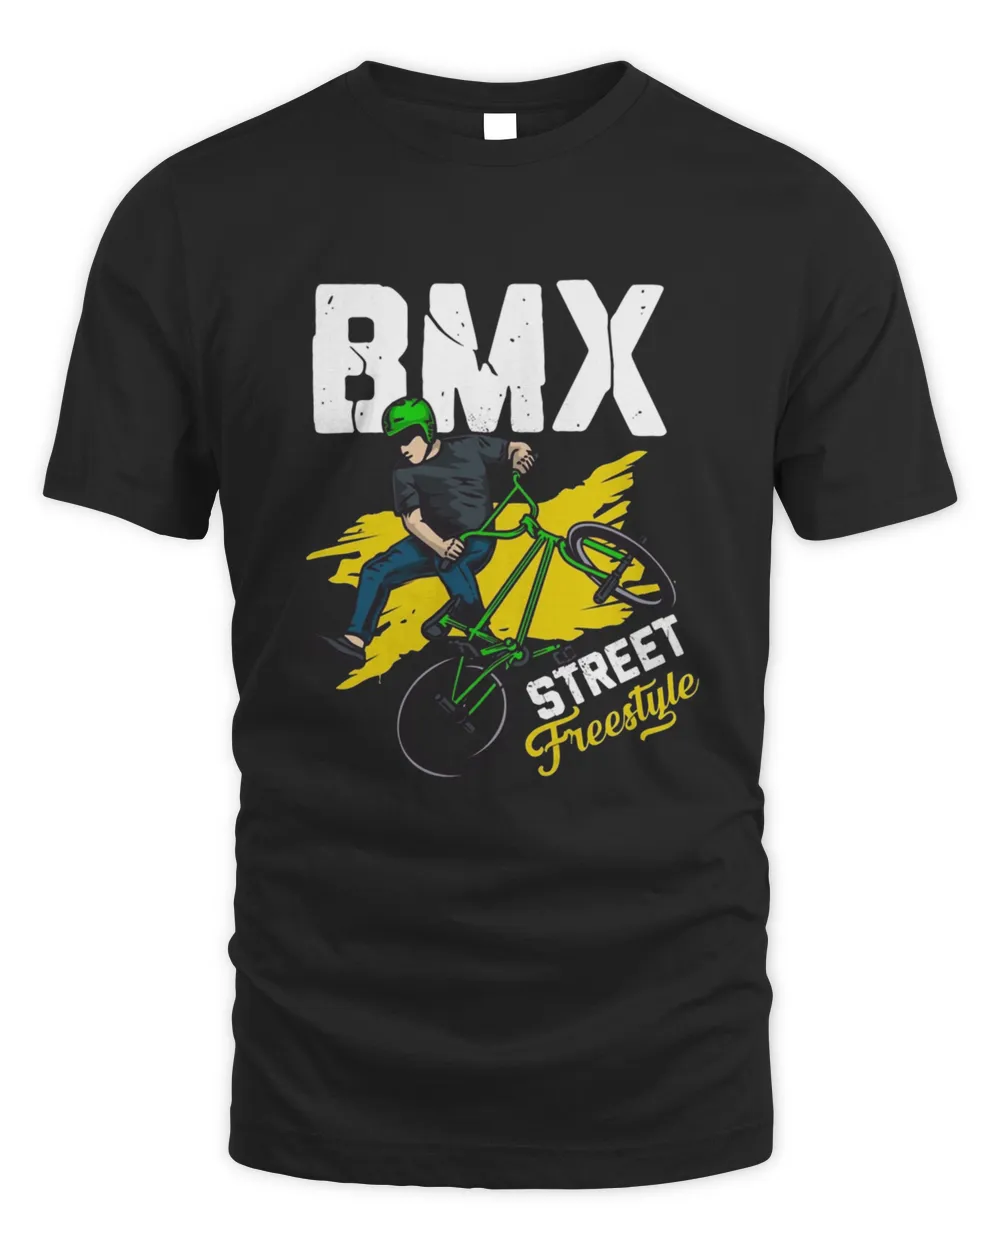 Bmx Bmx Bike Bmx Accessories Bmx Children Sleeveless Top